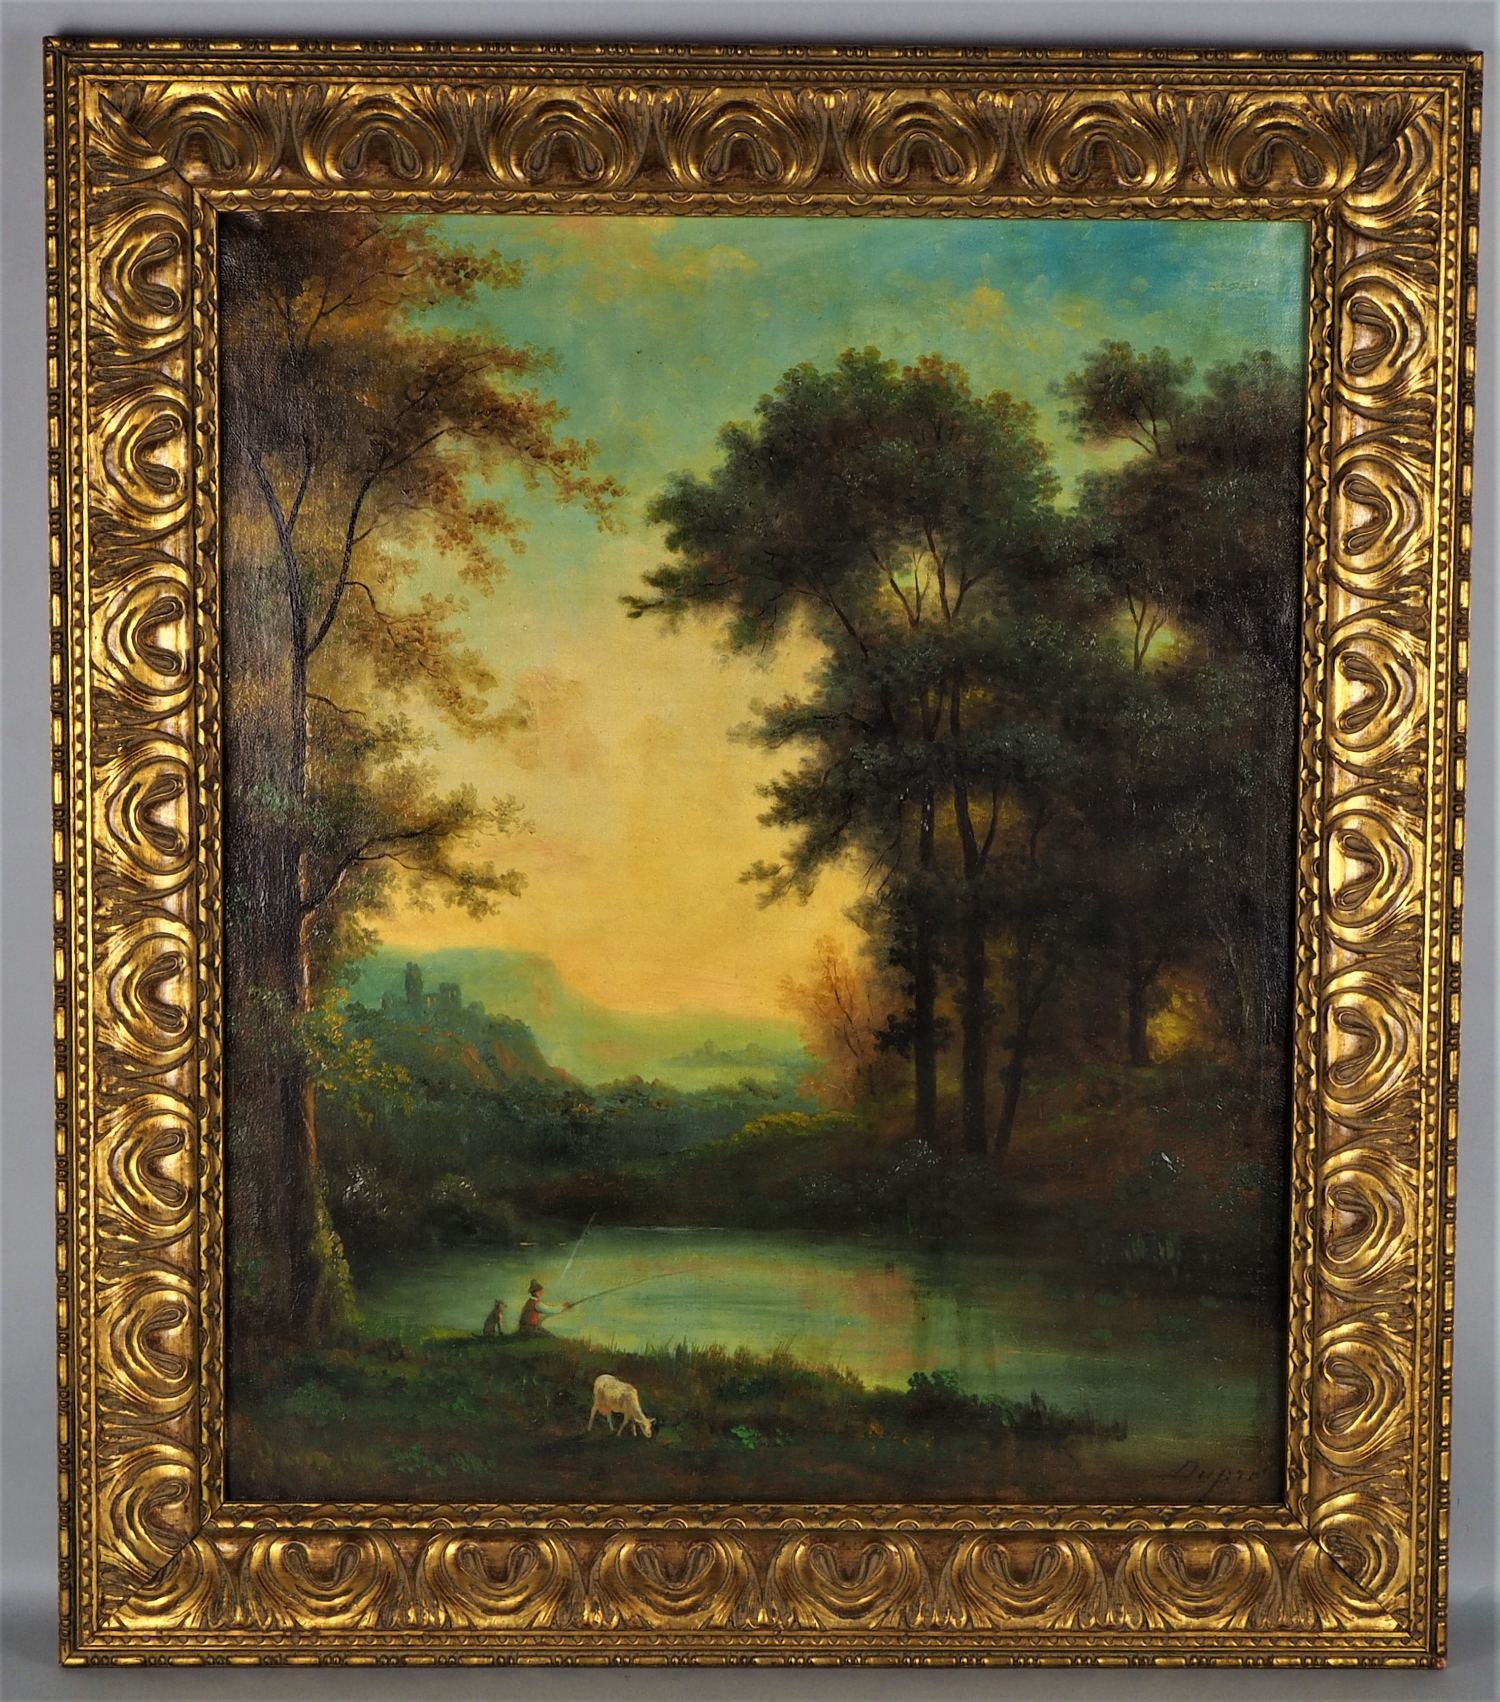 DUPRÉ, Jules (1811-1889), Romantic landscape, mid-19th century. 